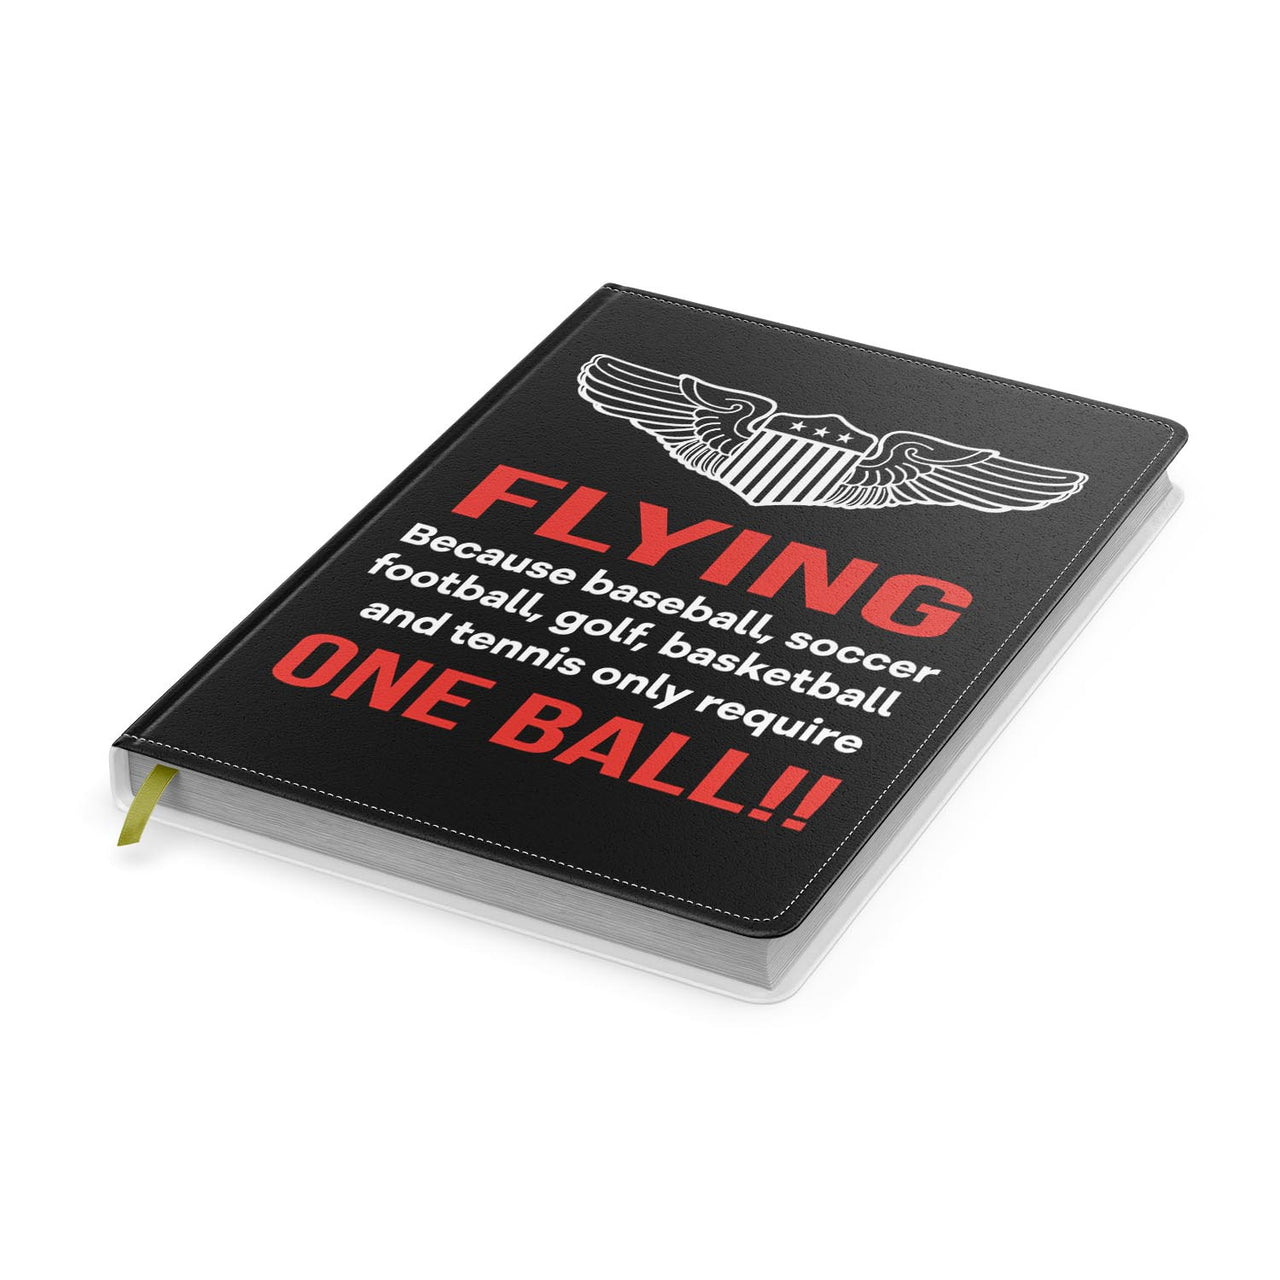 Flying One Ball Designed Notebooks